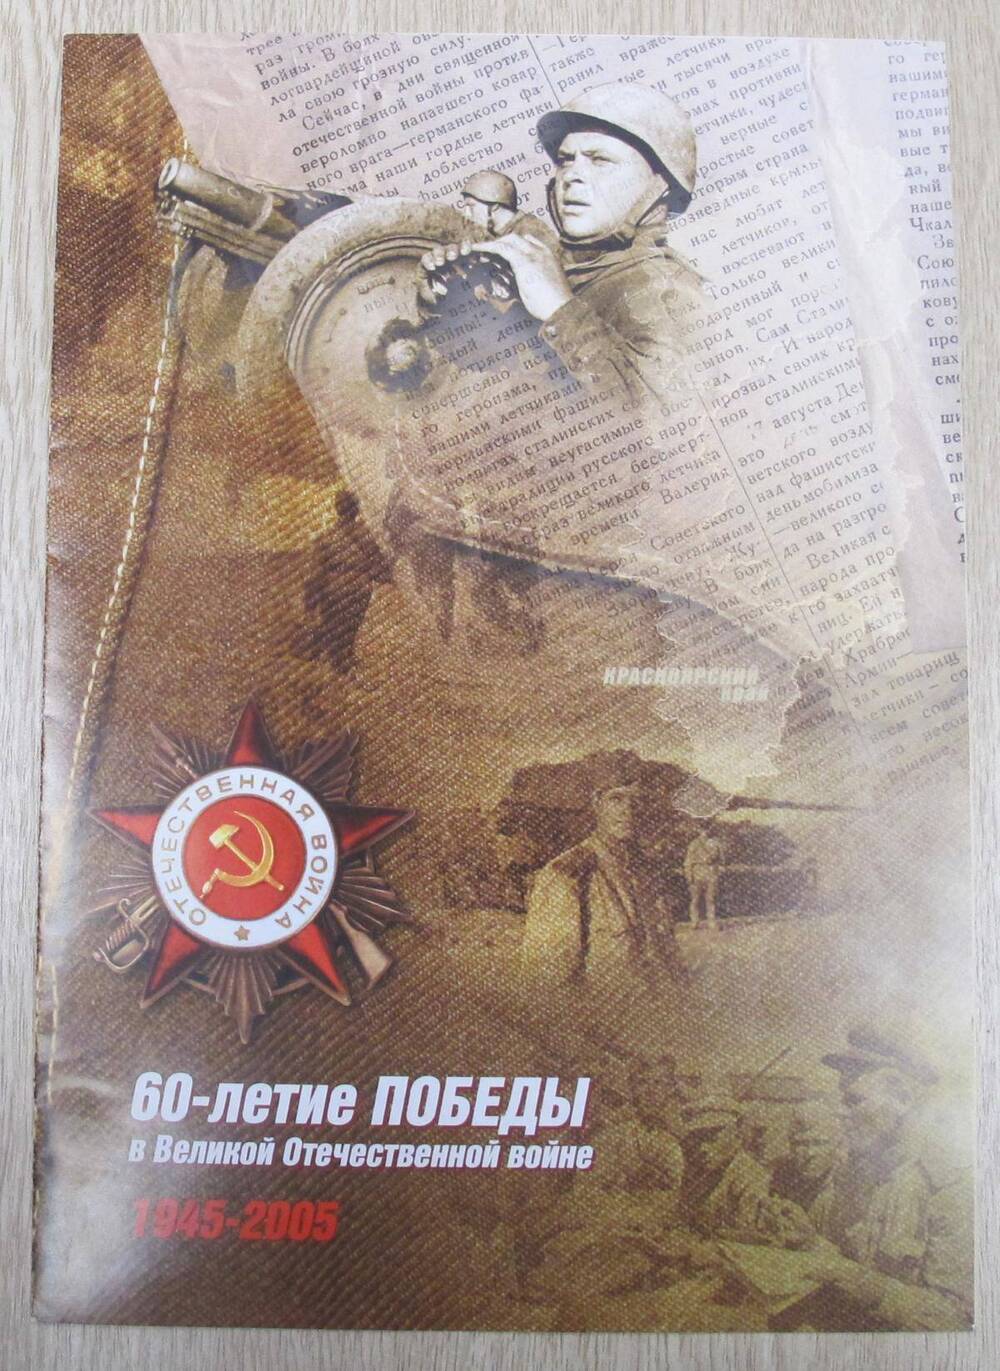 Приложение к поздравлению с 60-летием Победы в Великой Отечественной войне 1945-2005 гг. А. С. Алешкиной.